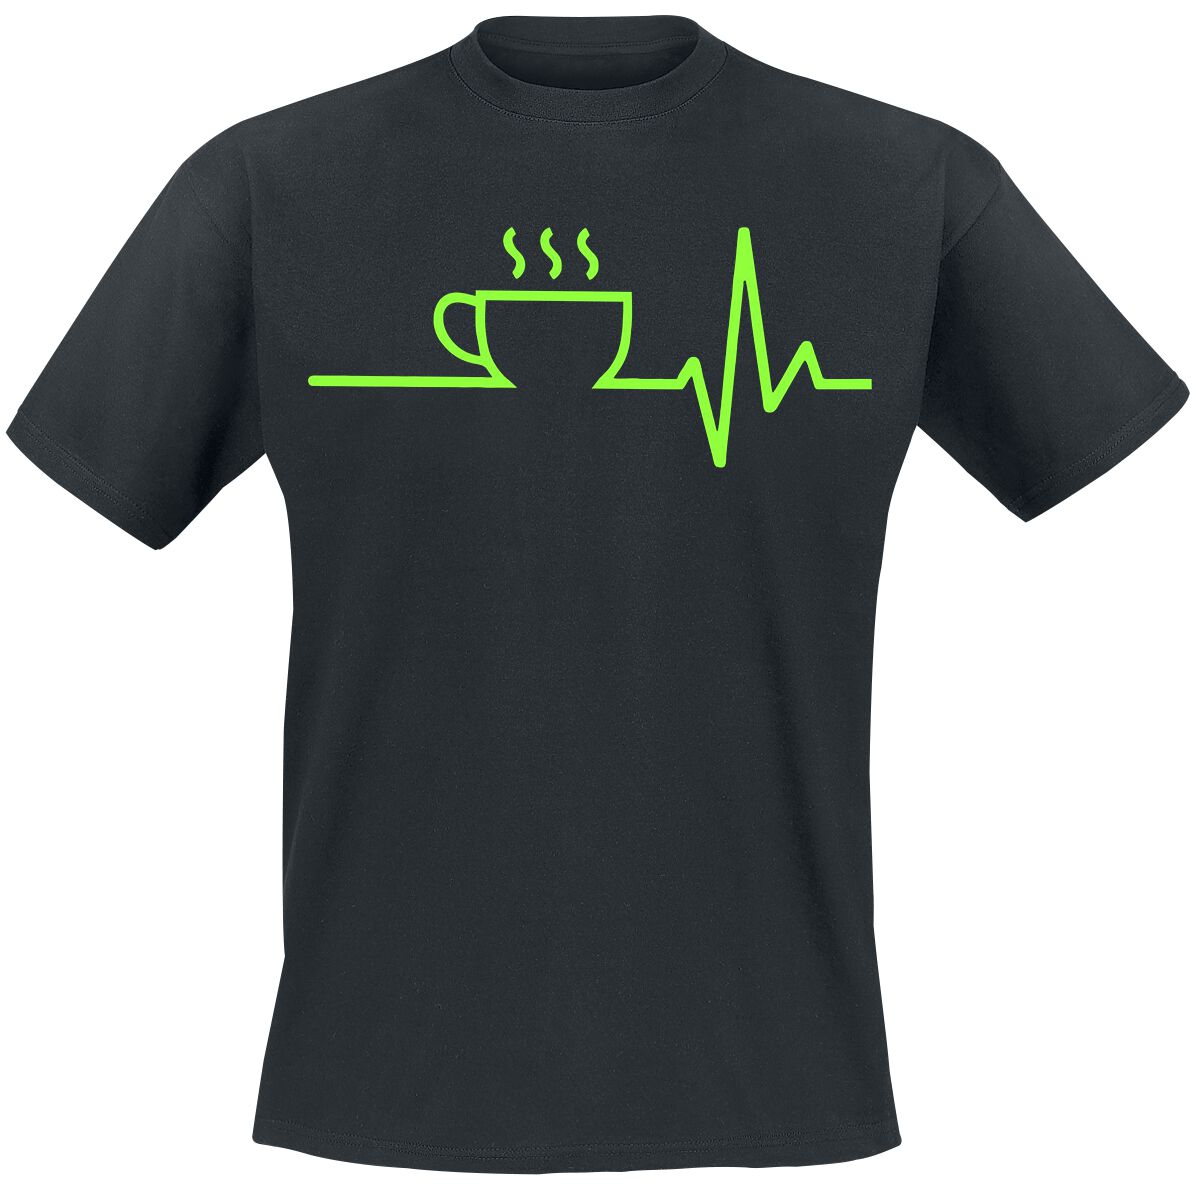 T-Shirt Manches courtes Fun de Food - ECG - Café - S à 4XL - pour Homme - noir